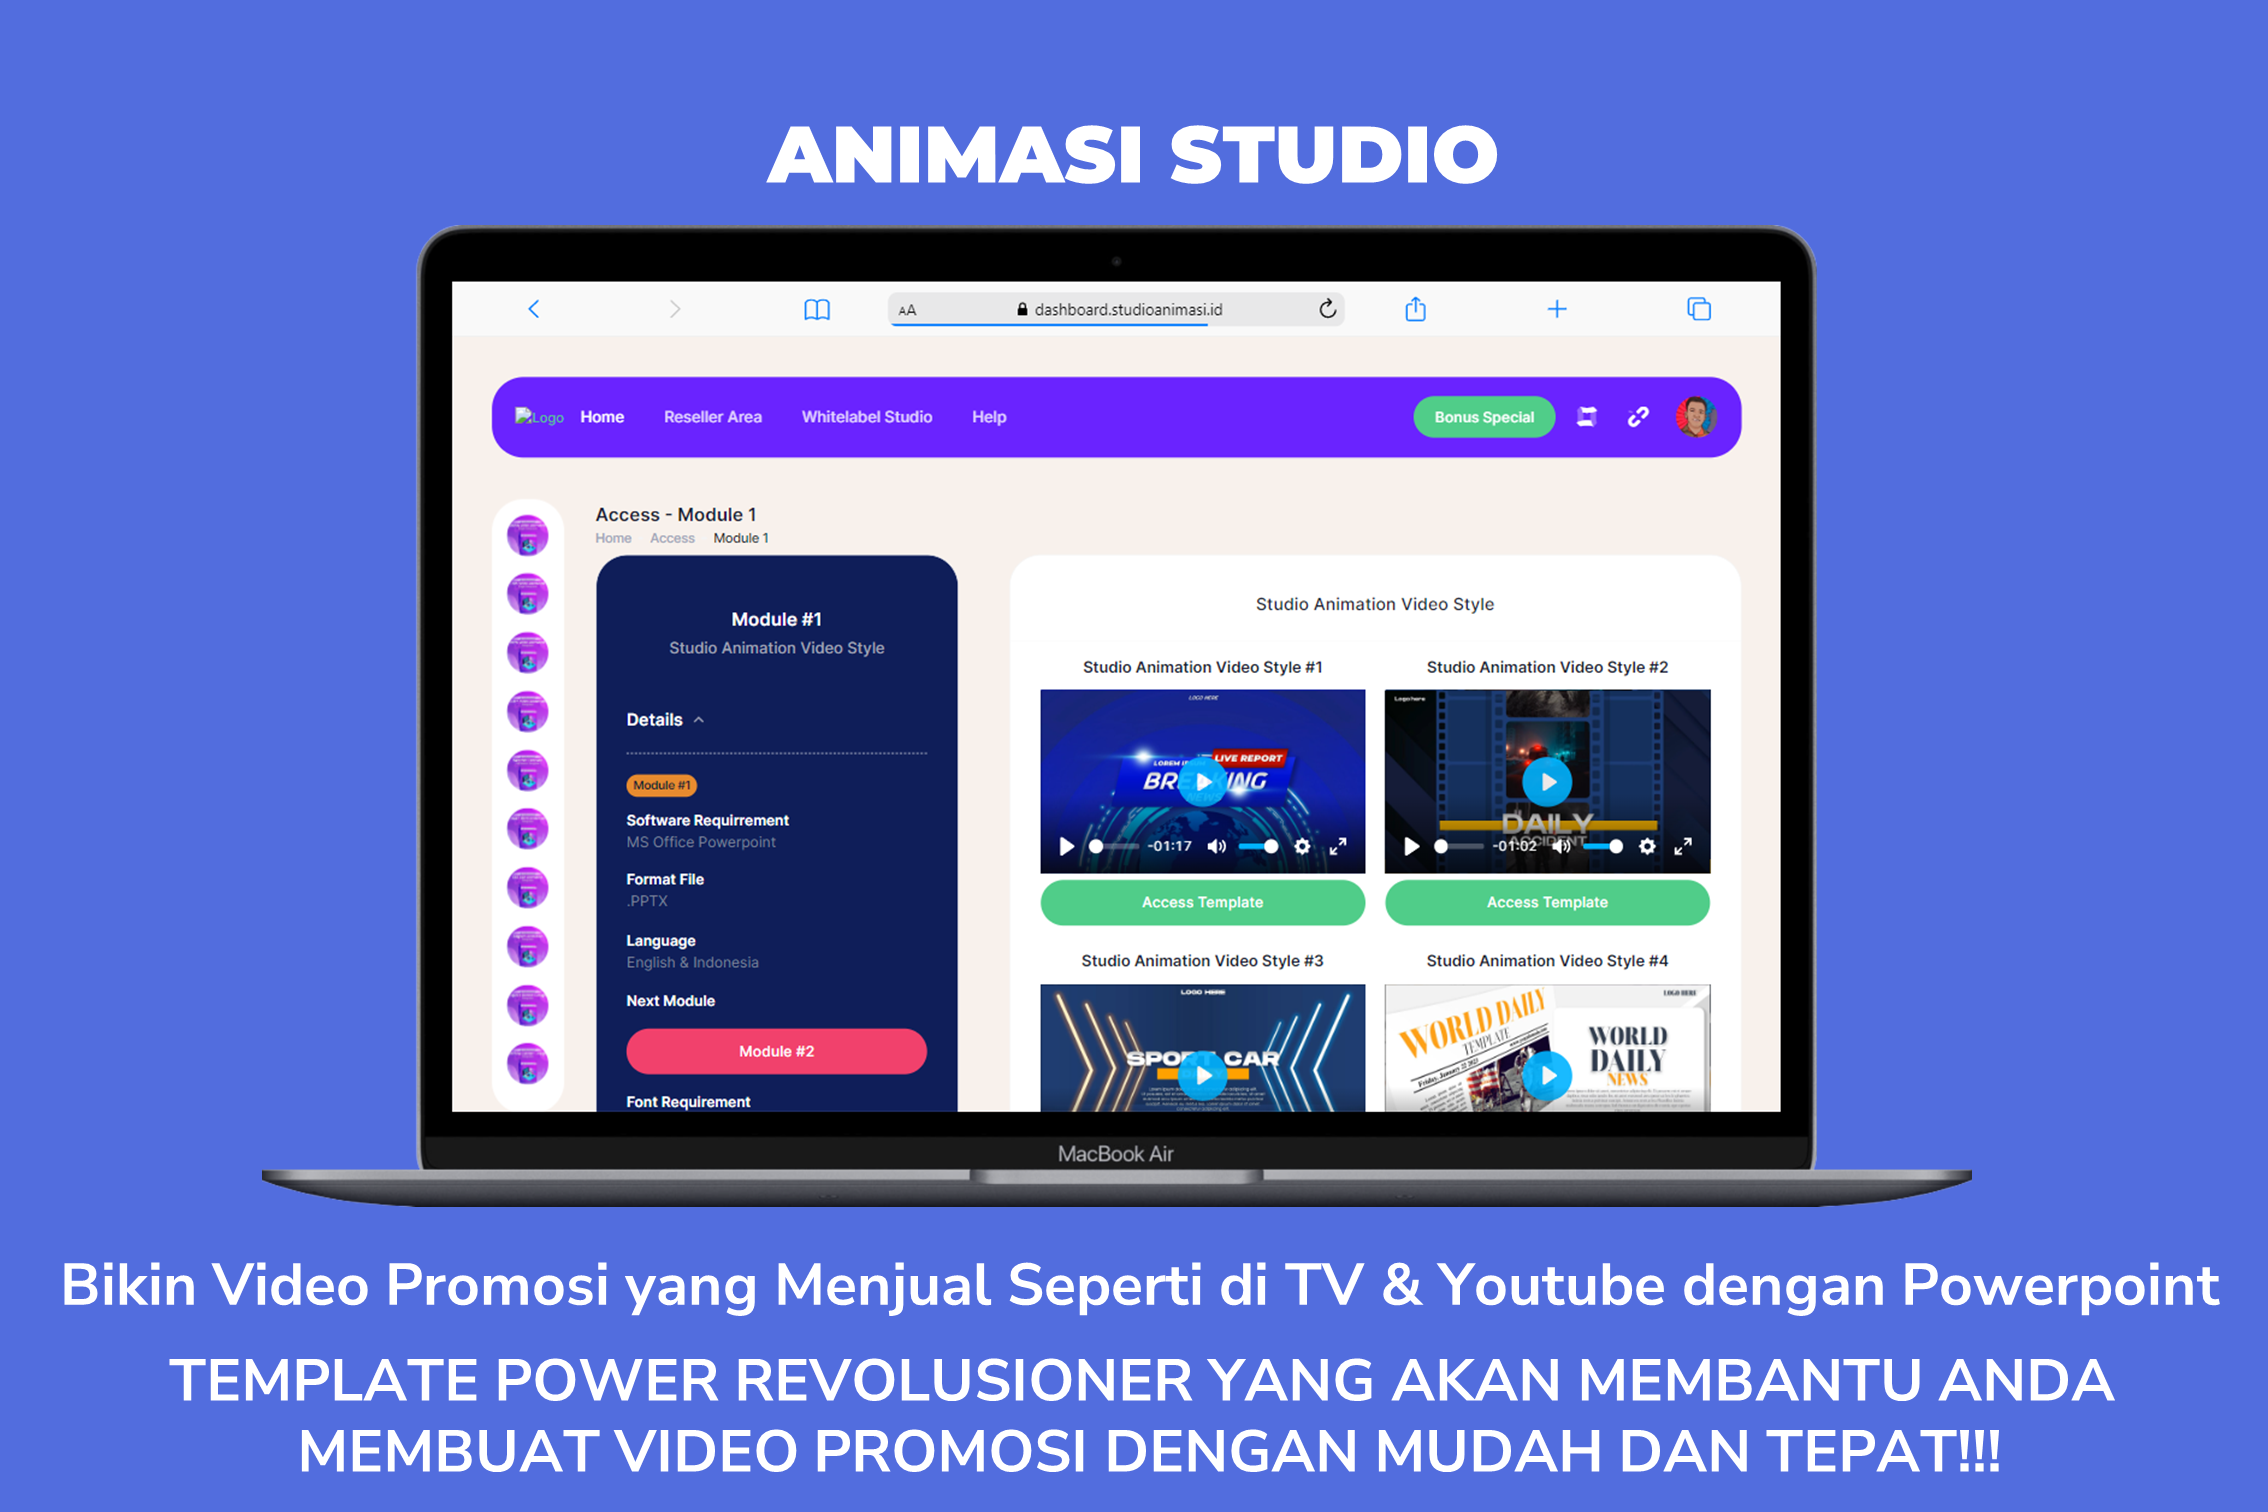 ANIMASI STUDIO - Bikin Video Promosi yang Menjual Seperti di TV & Youtube dengan Powerpoint